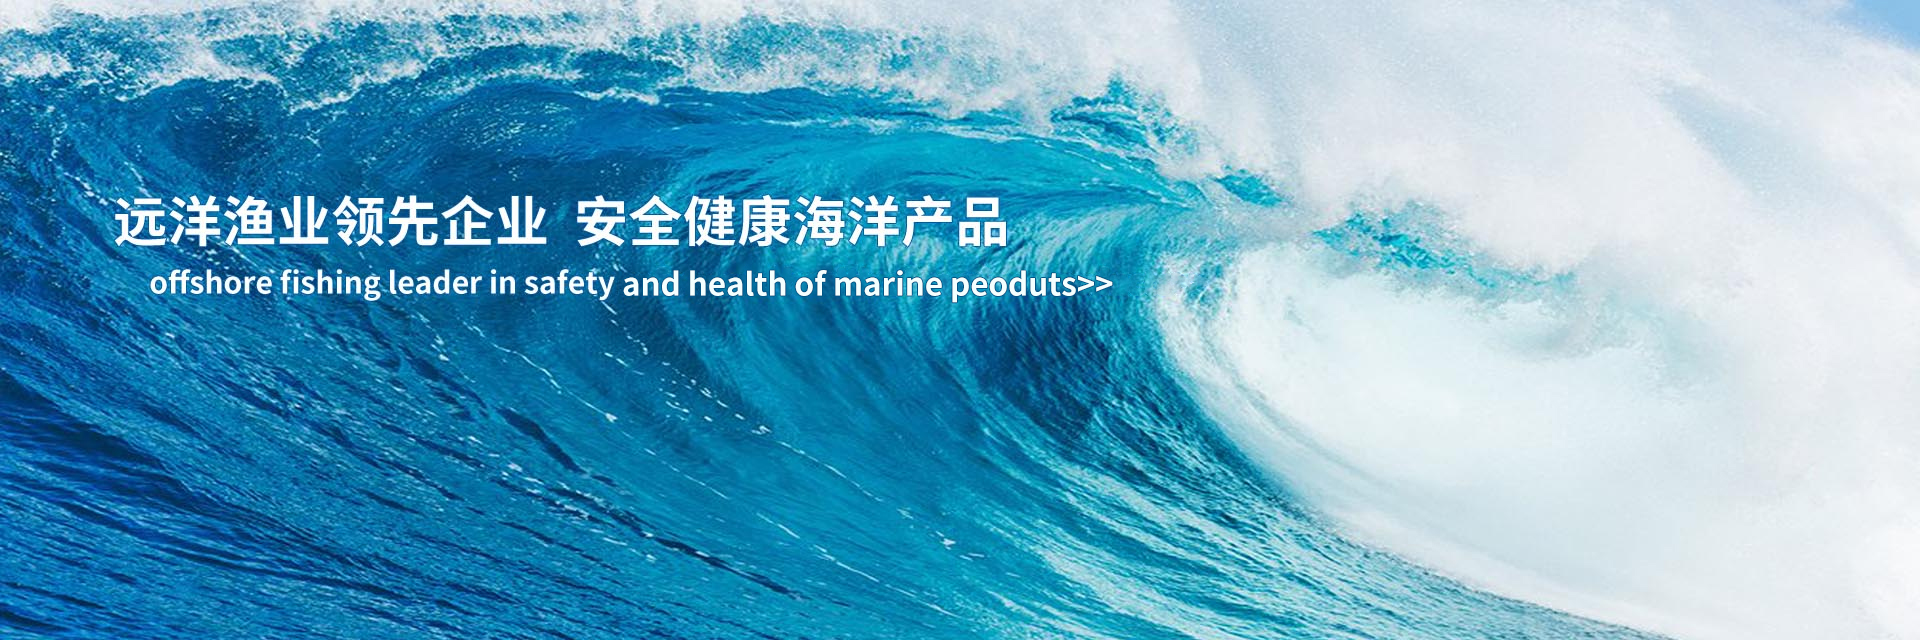 远洋渔业领先企业 安全健康海洋产品